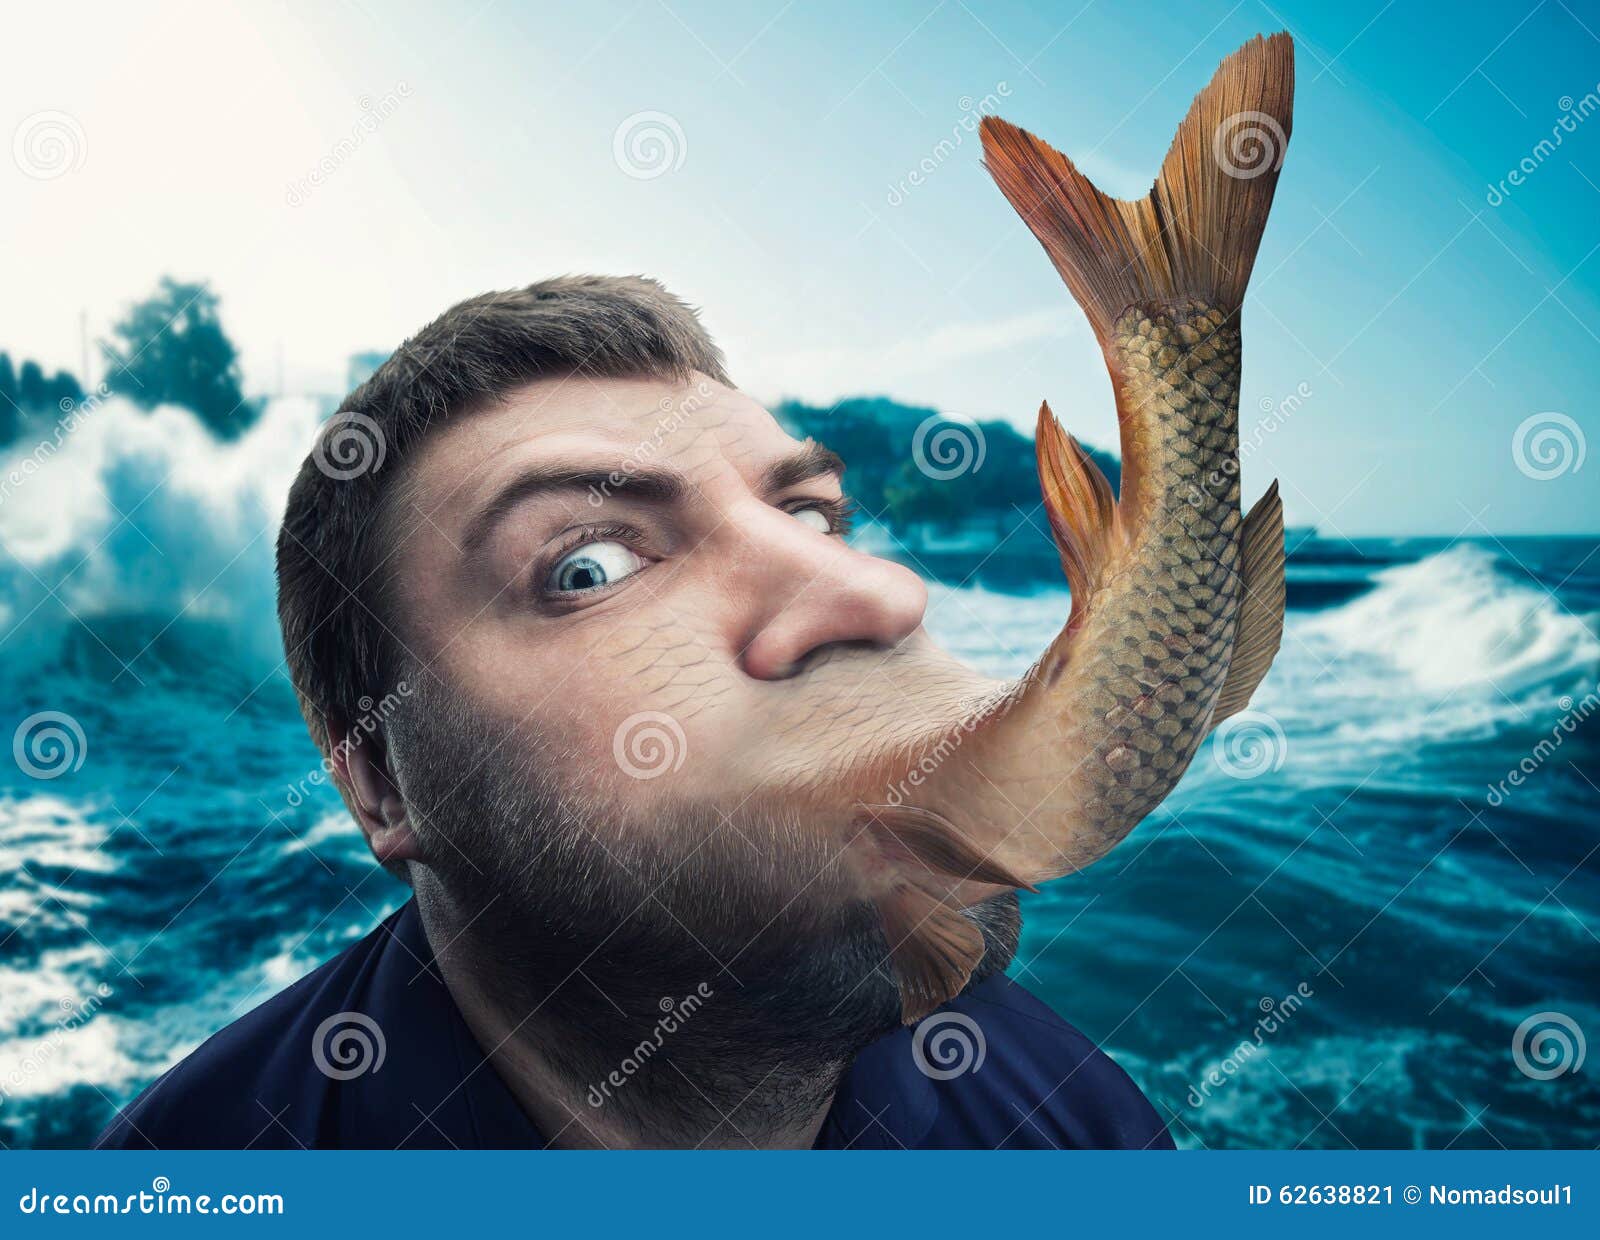 Кармическая рыба. Парень с рыбьим хвостом. Человек рыбка.